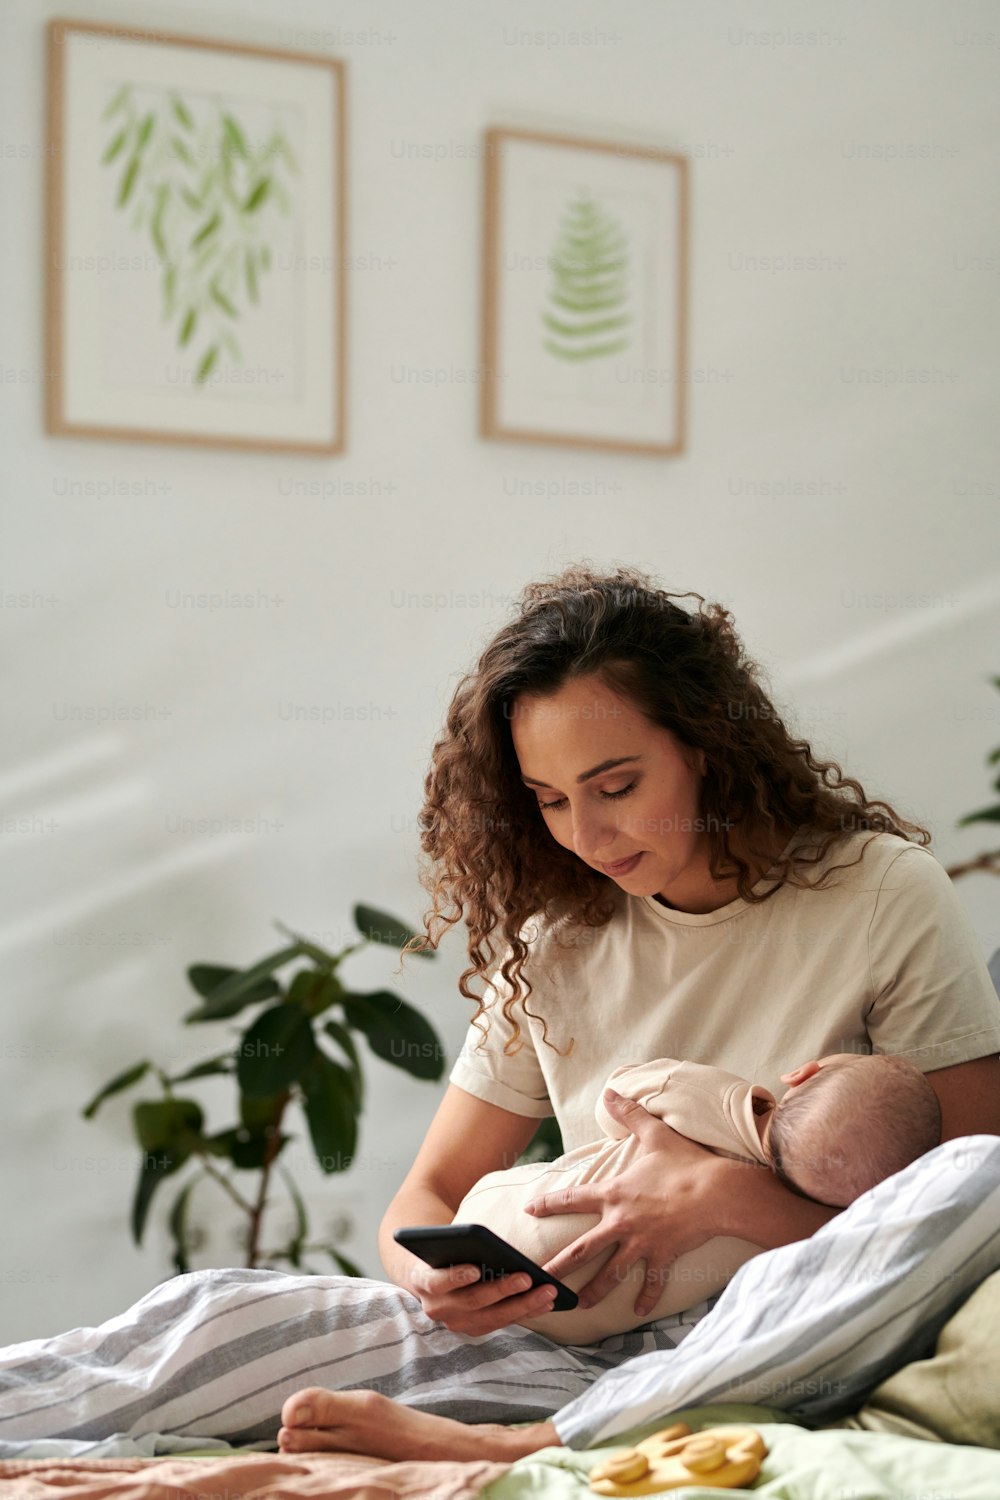 Mãe jovem com bebê nas mãos enviando mensagens de texto no telefone celular enquanto está sentada na confortável cama de casal contra a parede com fotos em molduras